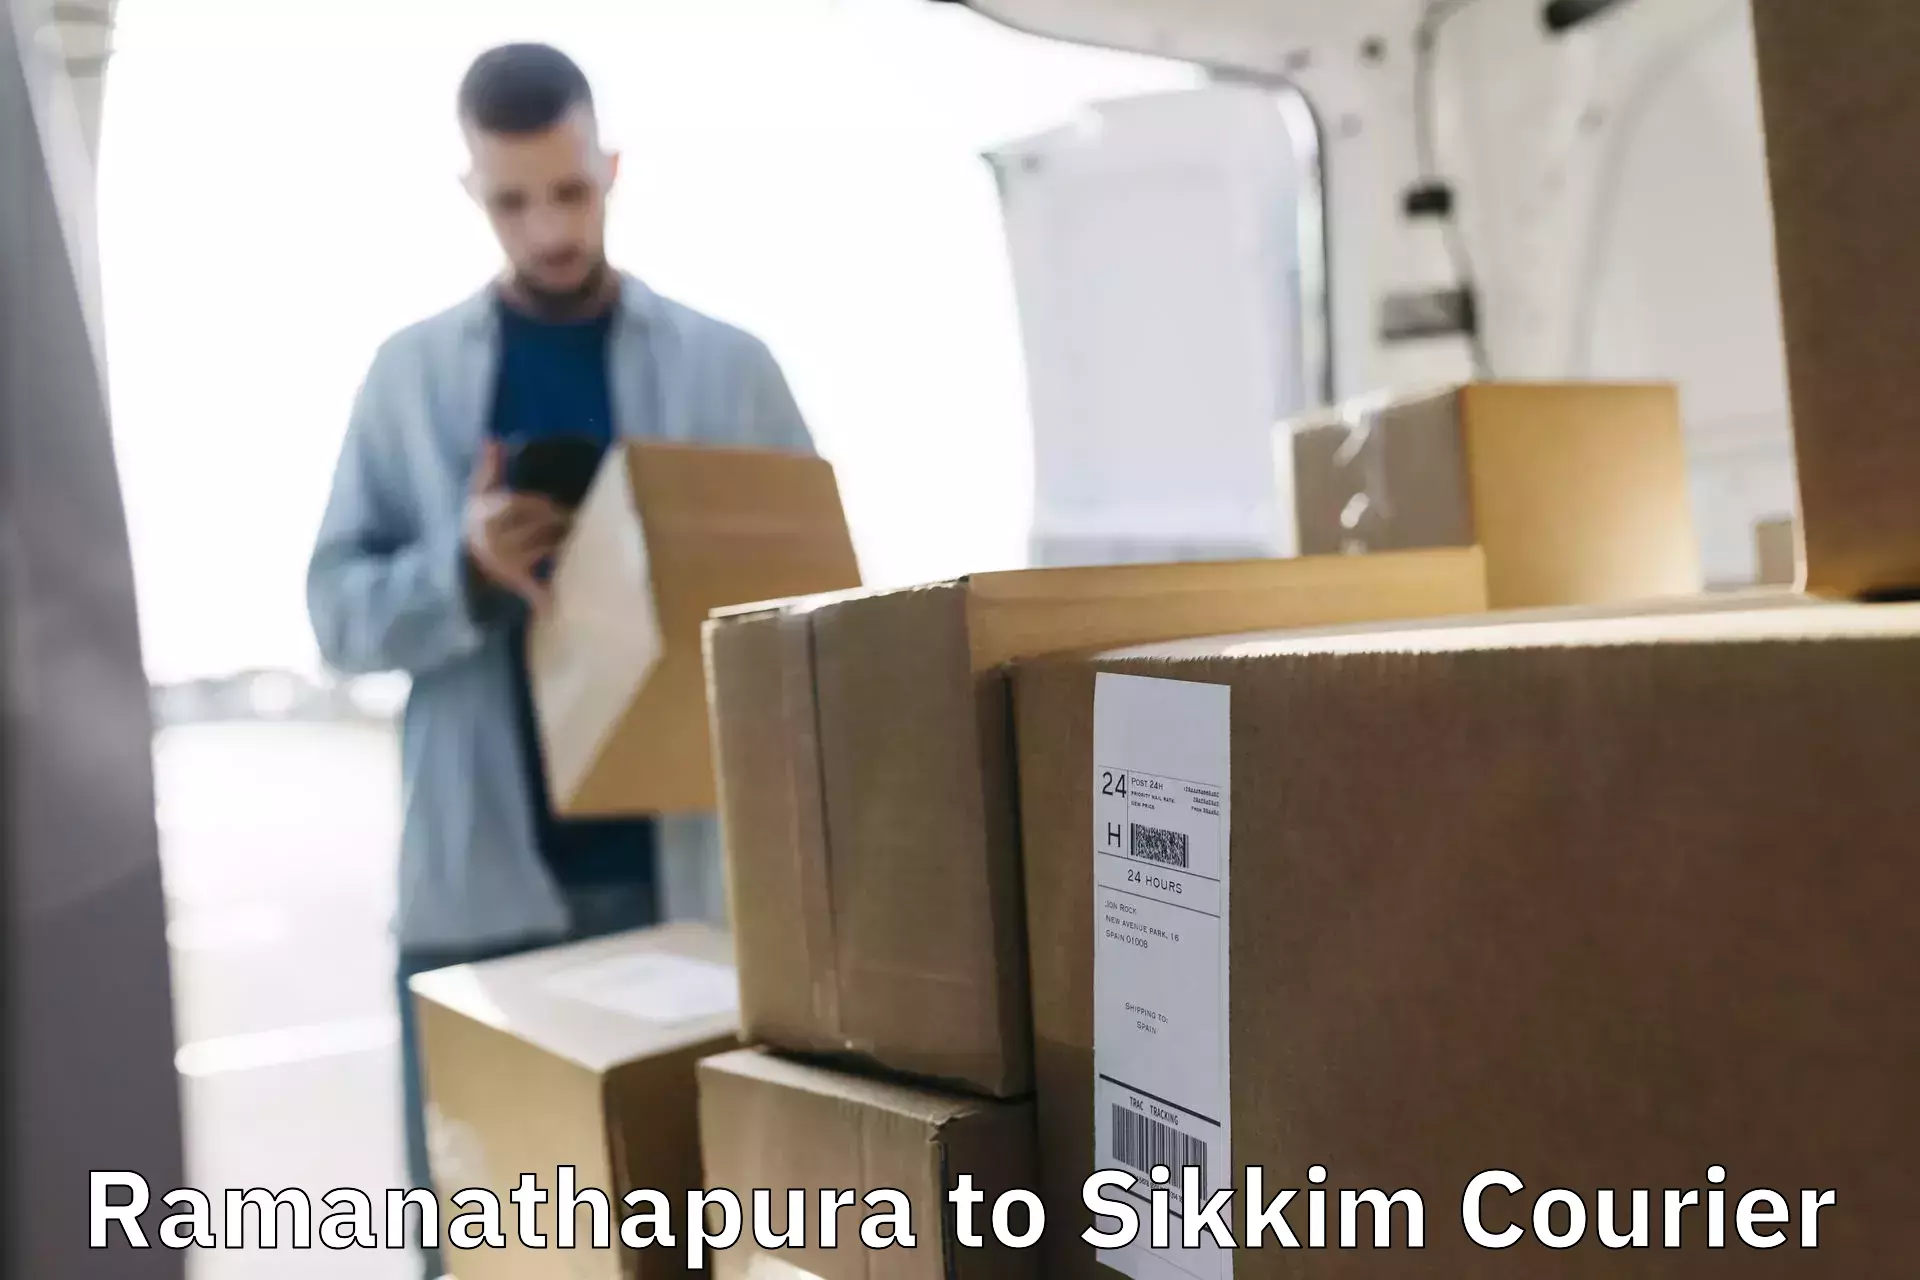 Urgent courier needs Ramanathapura to North Sikkim